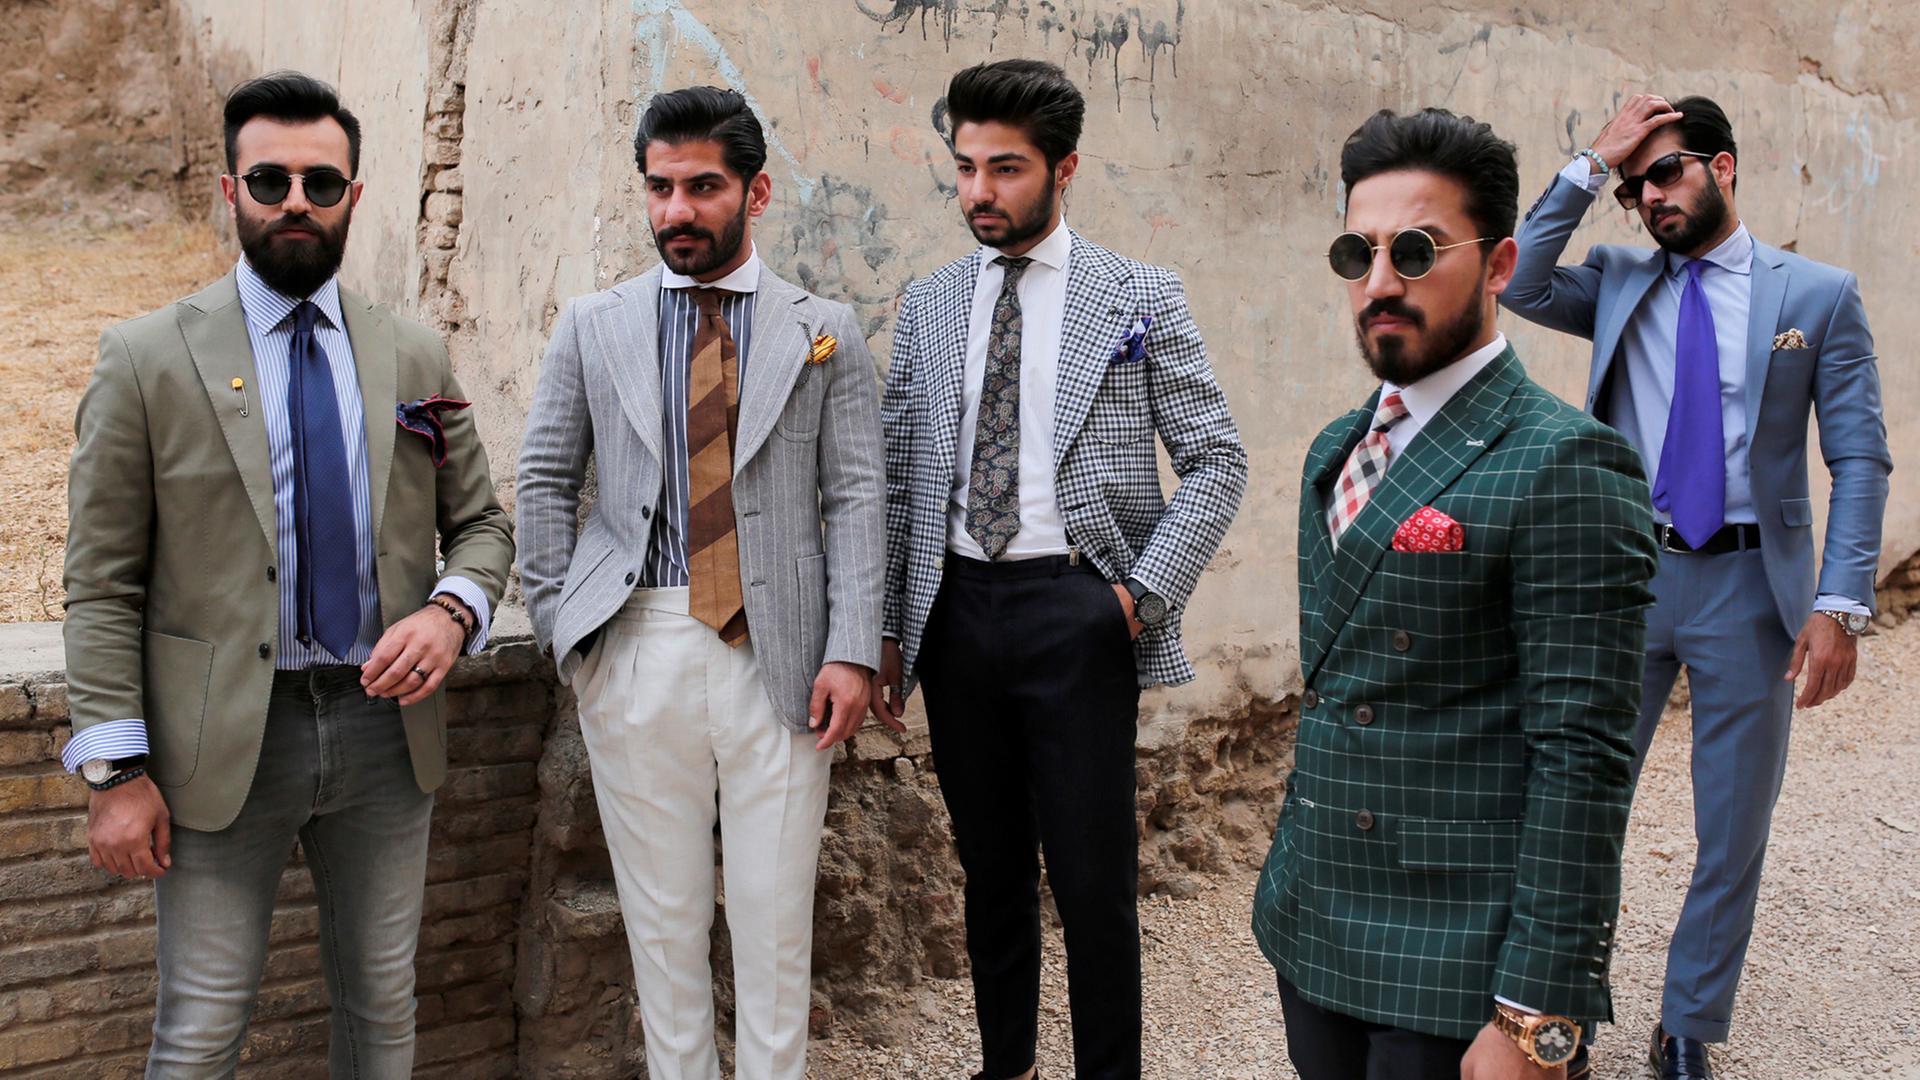 "Mr. Erbil" nennt sich eine Gruppe junger, modebewusster Männer aus dem Irak